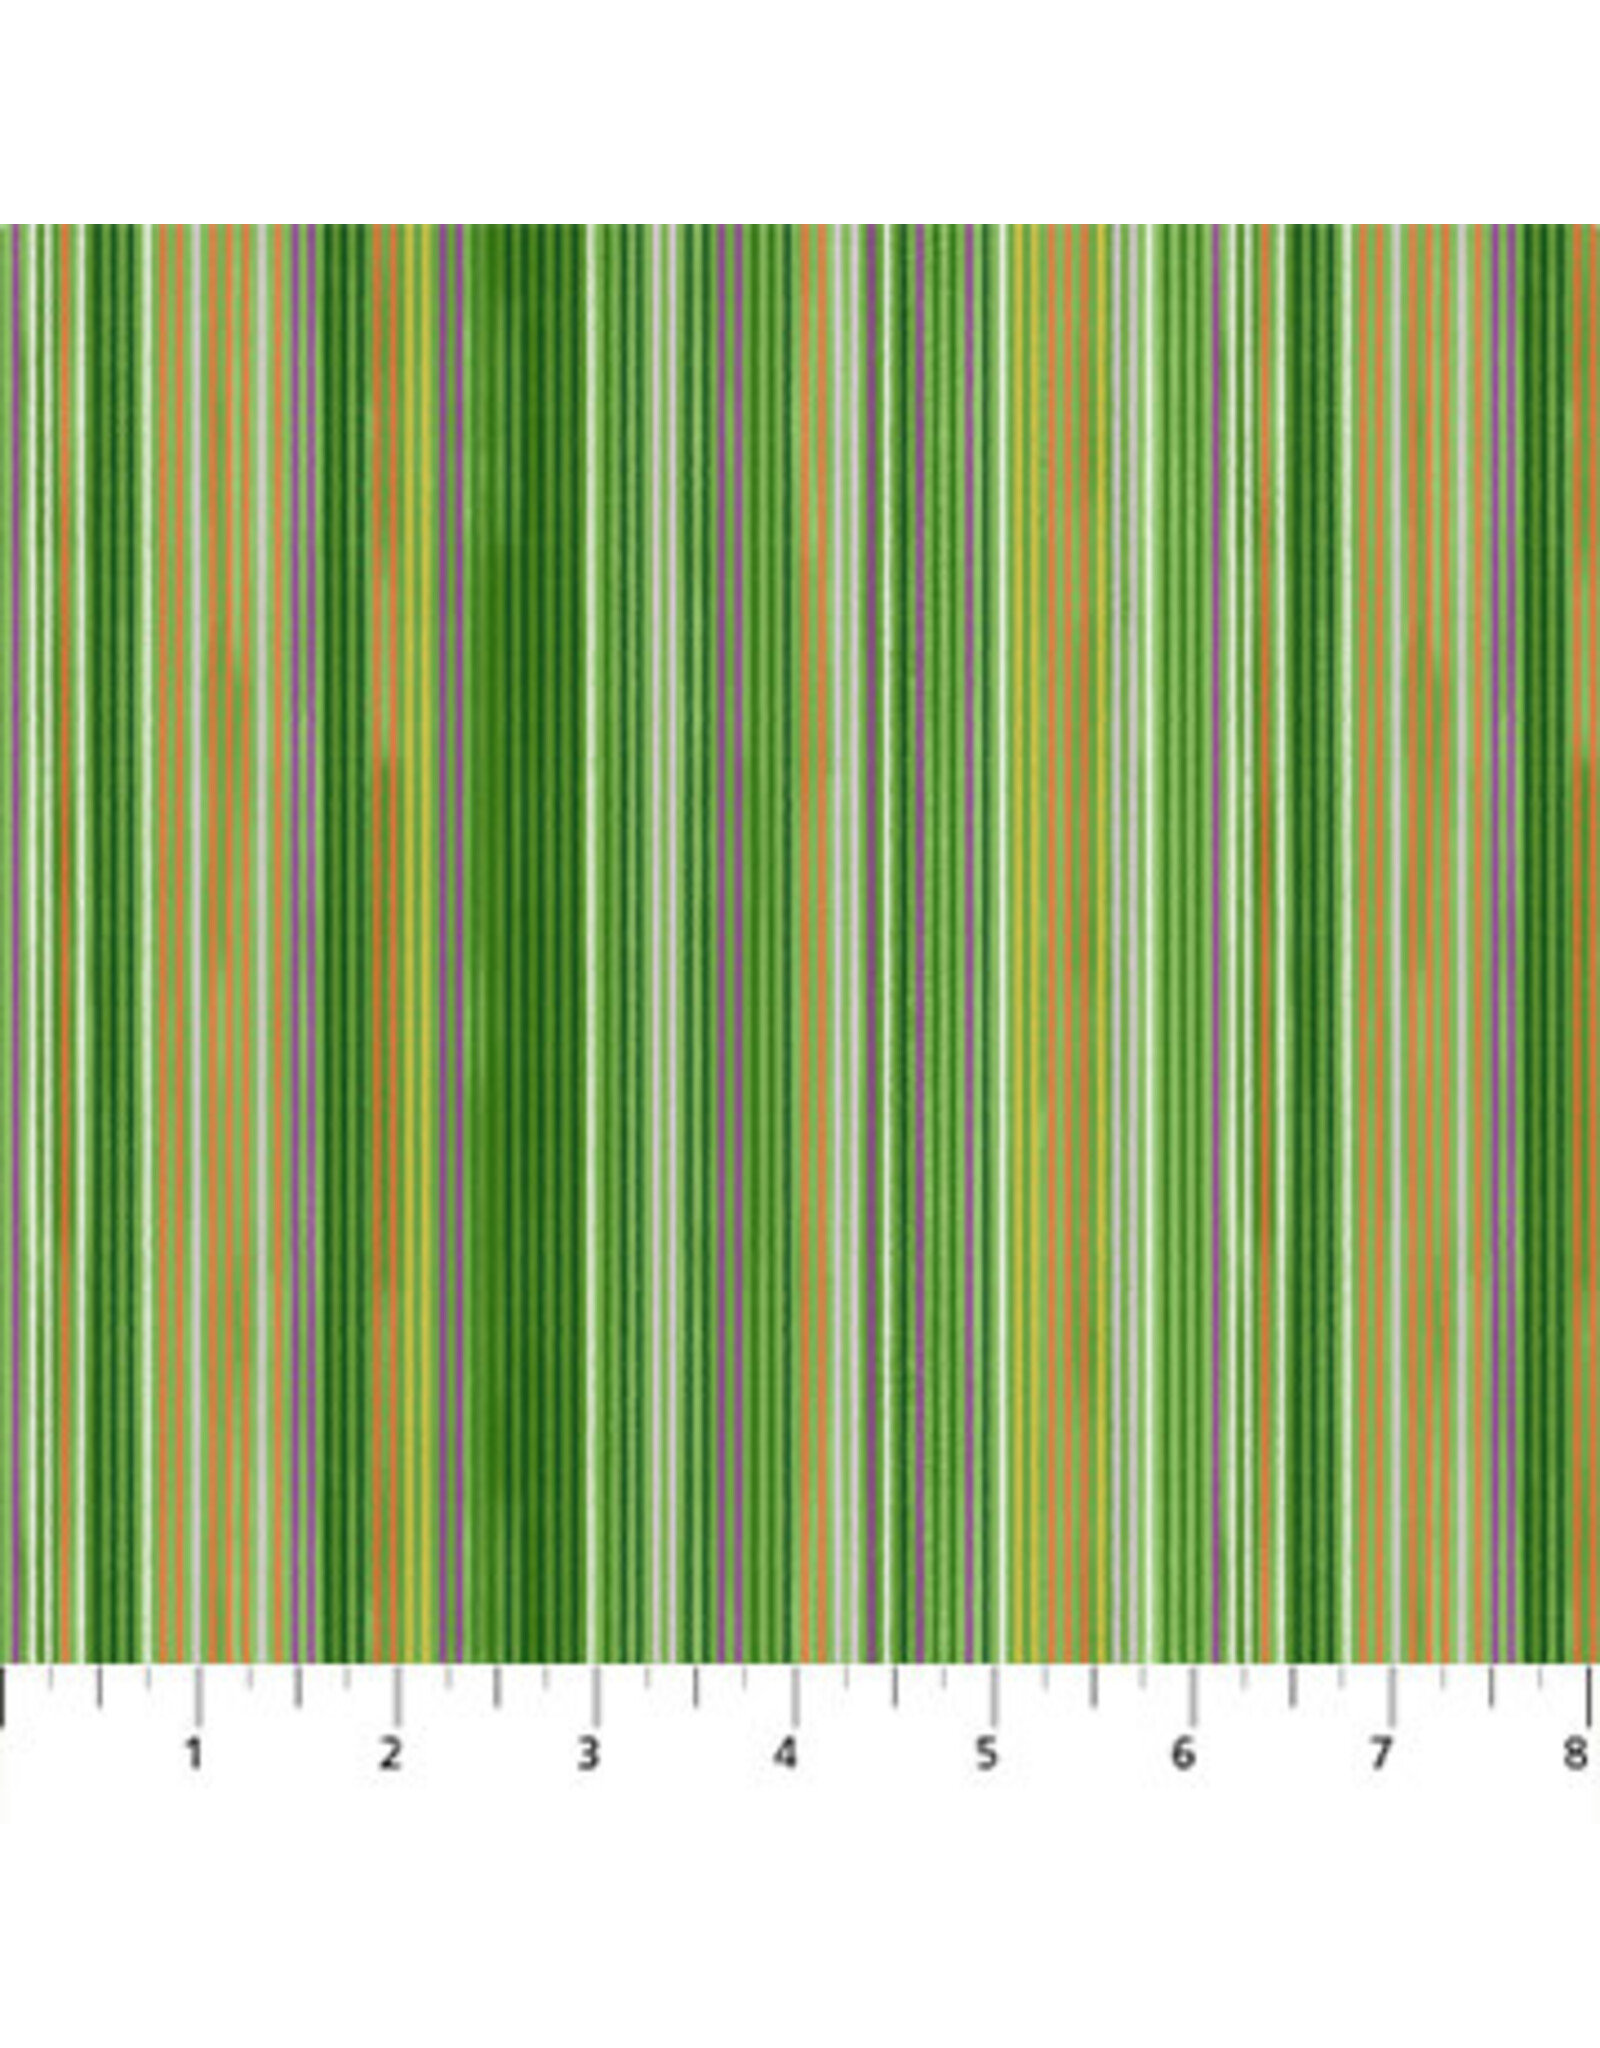 Figo Sunday - Stripe Green coupon (± 48 x 110 cm)